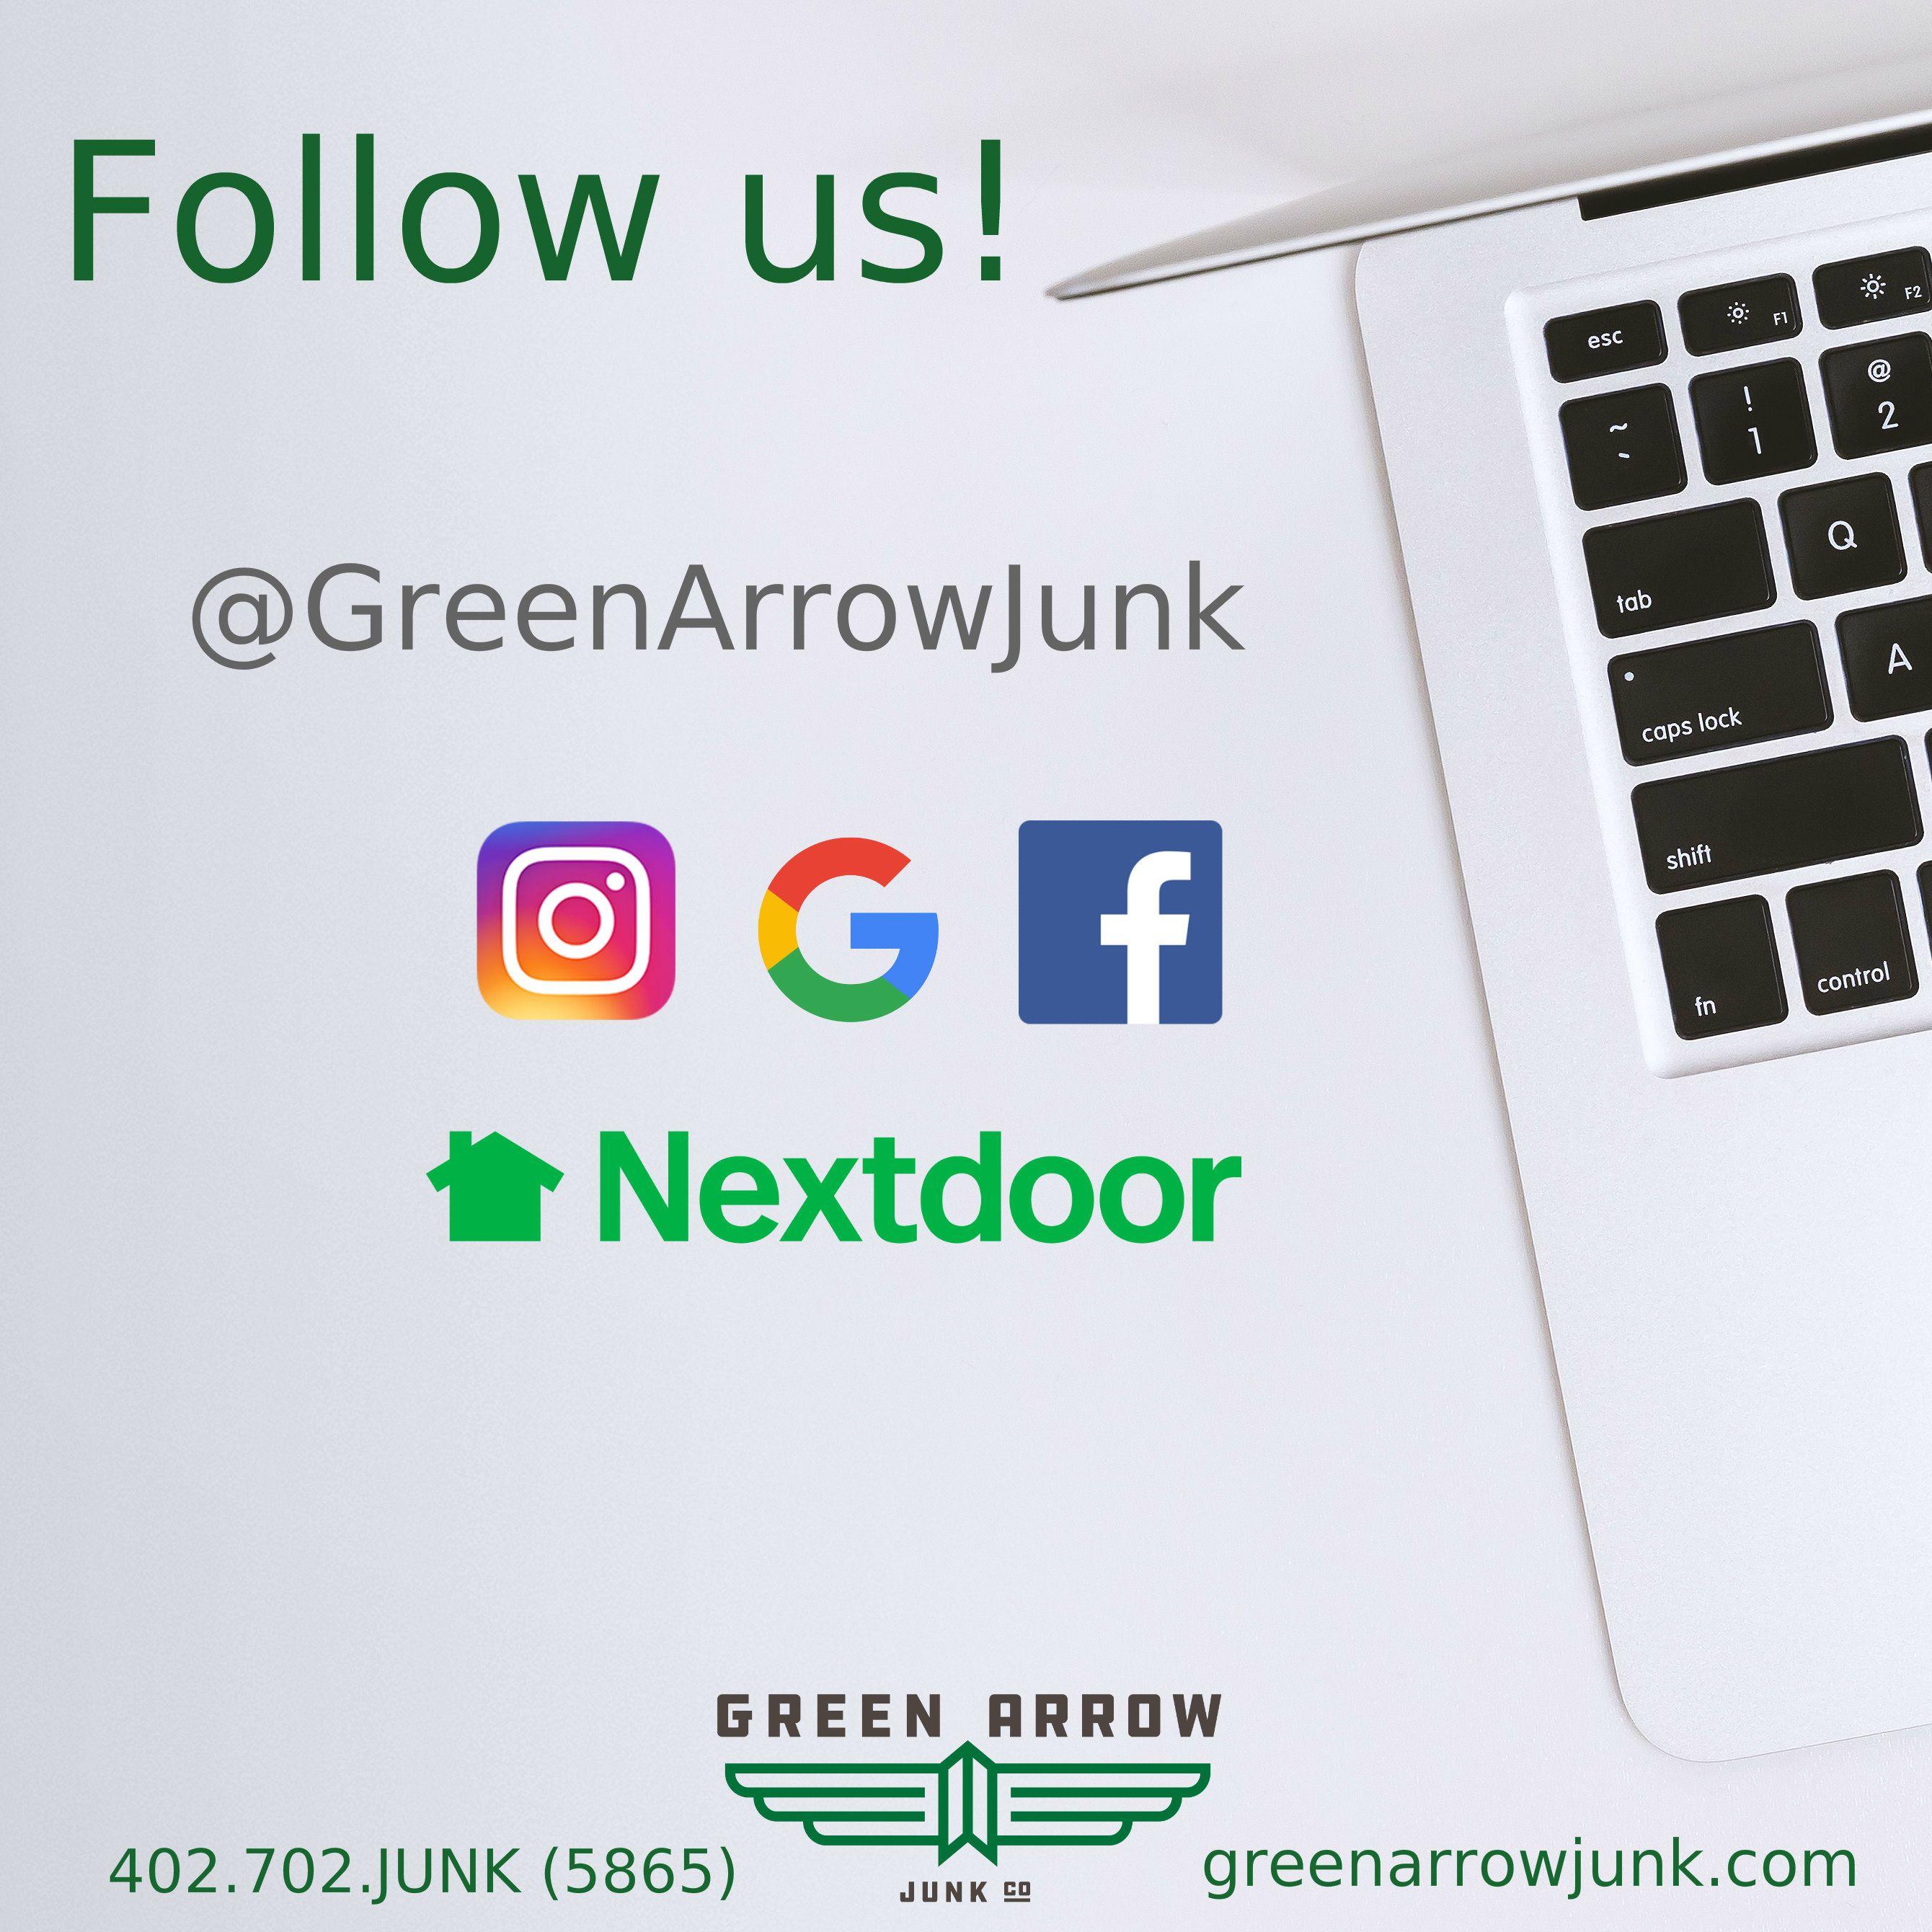 Green Arrow Company Logo - Green Arrow Junk Company in Omaha, Nebraska. We're your full-service ...